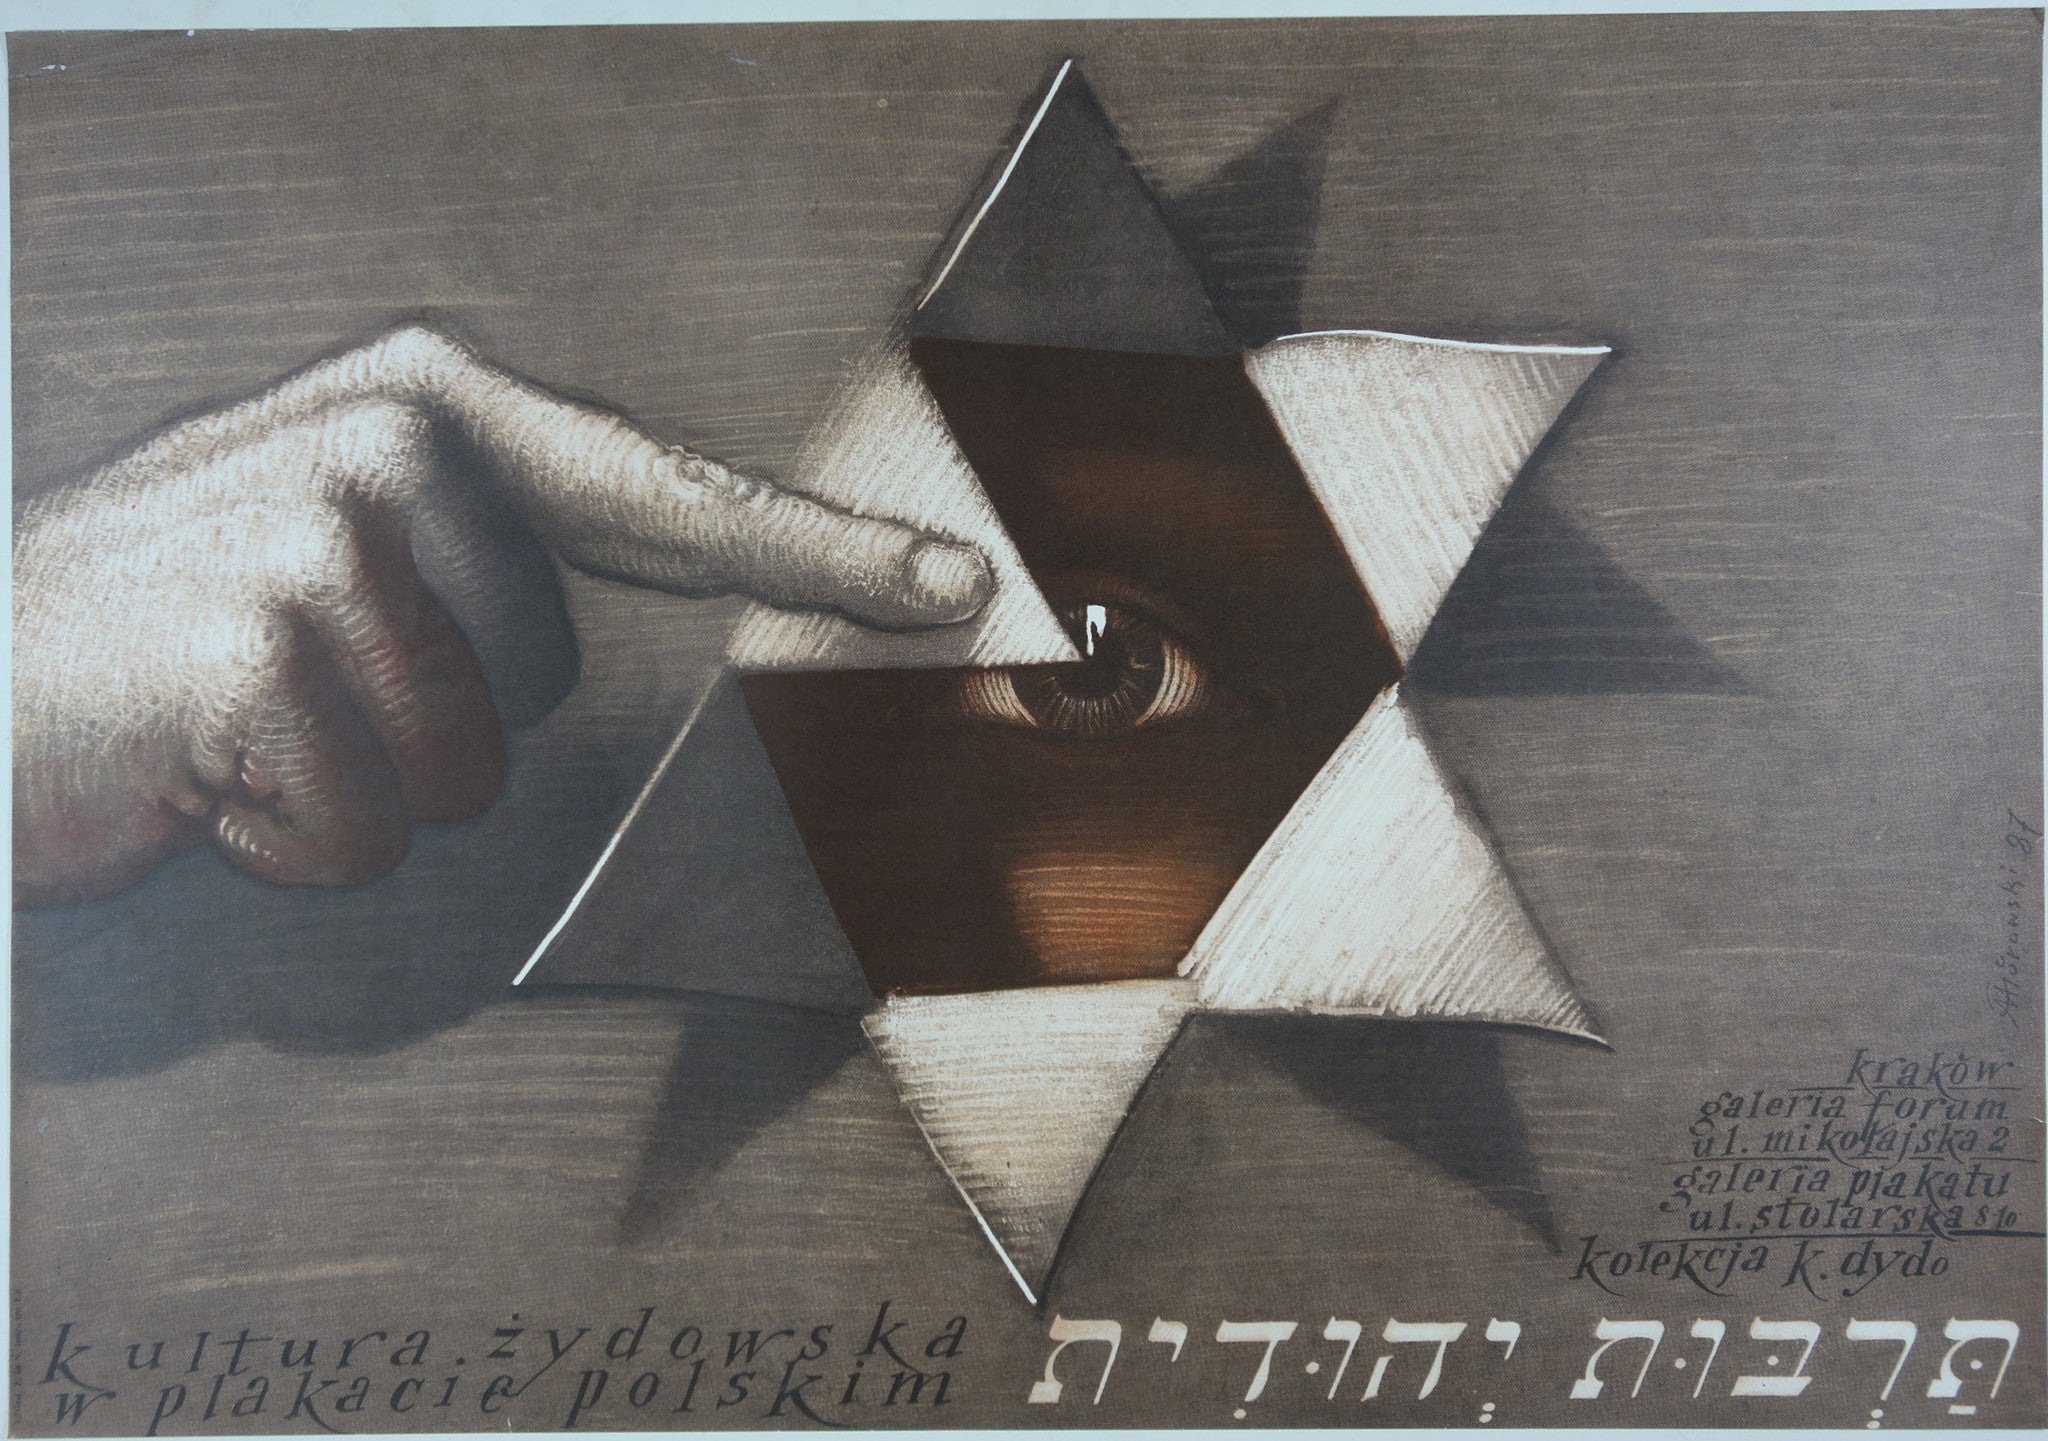 kultura zydowska w plakacie polskim